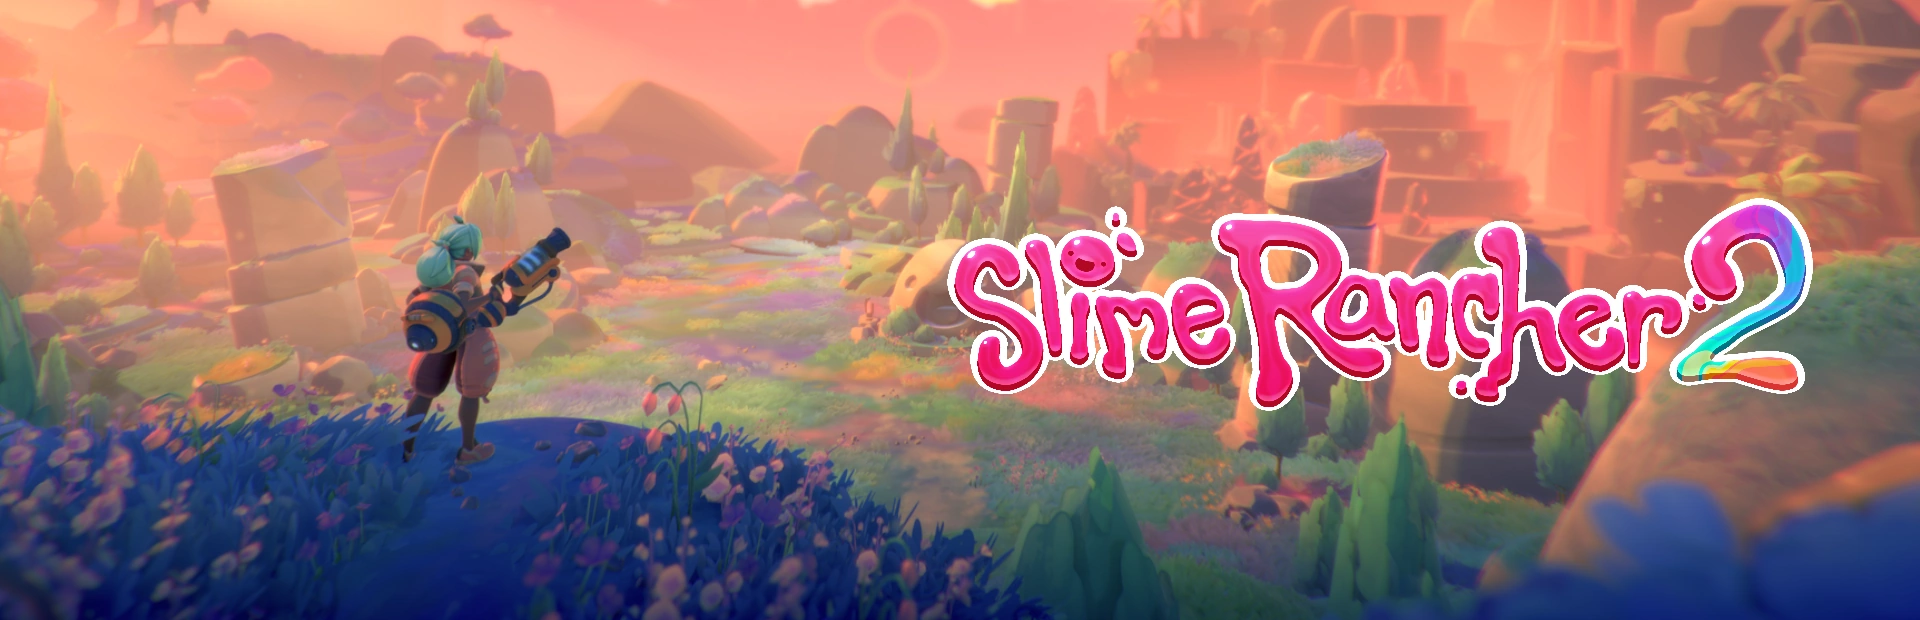 دانلود بازی Slime Rancher 2 برای کامپیوتر | گیمباتو